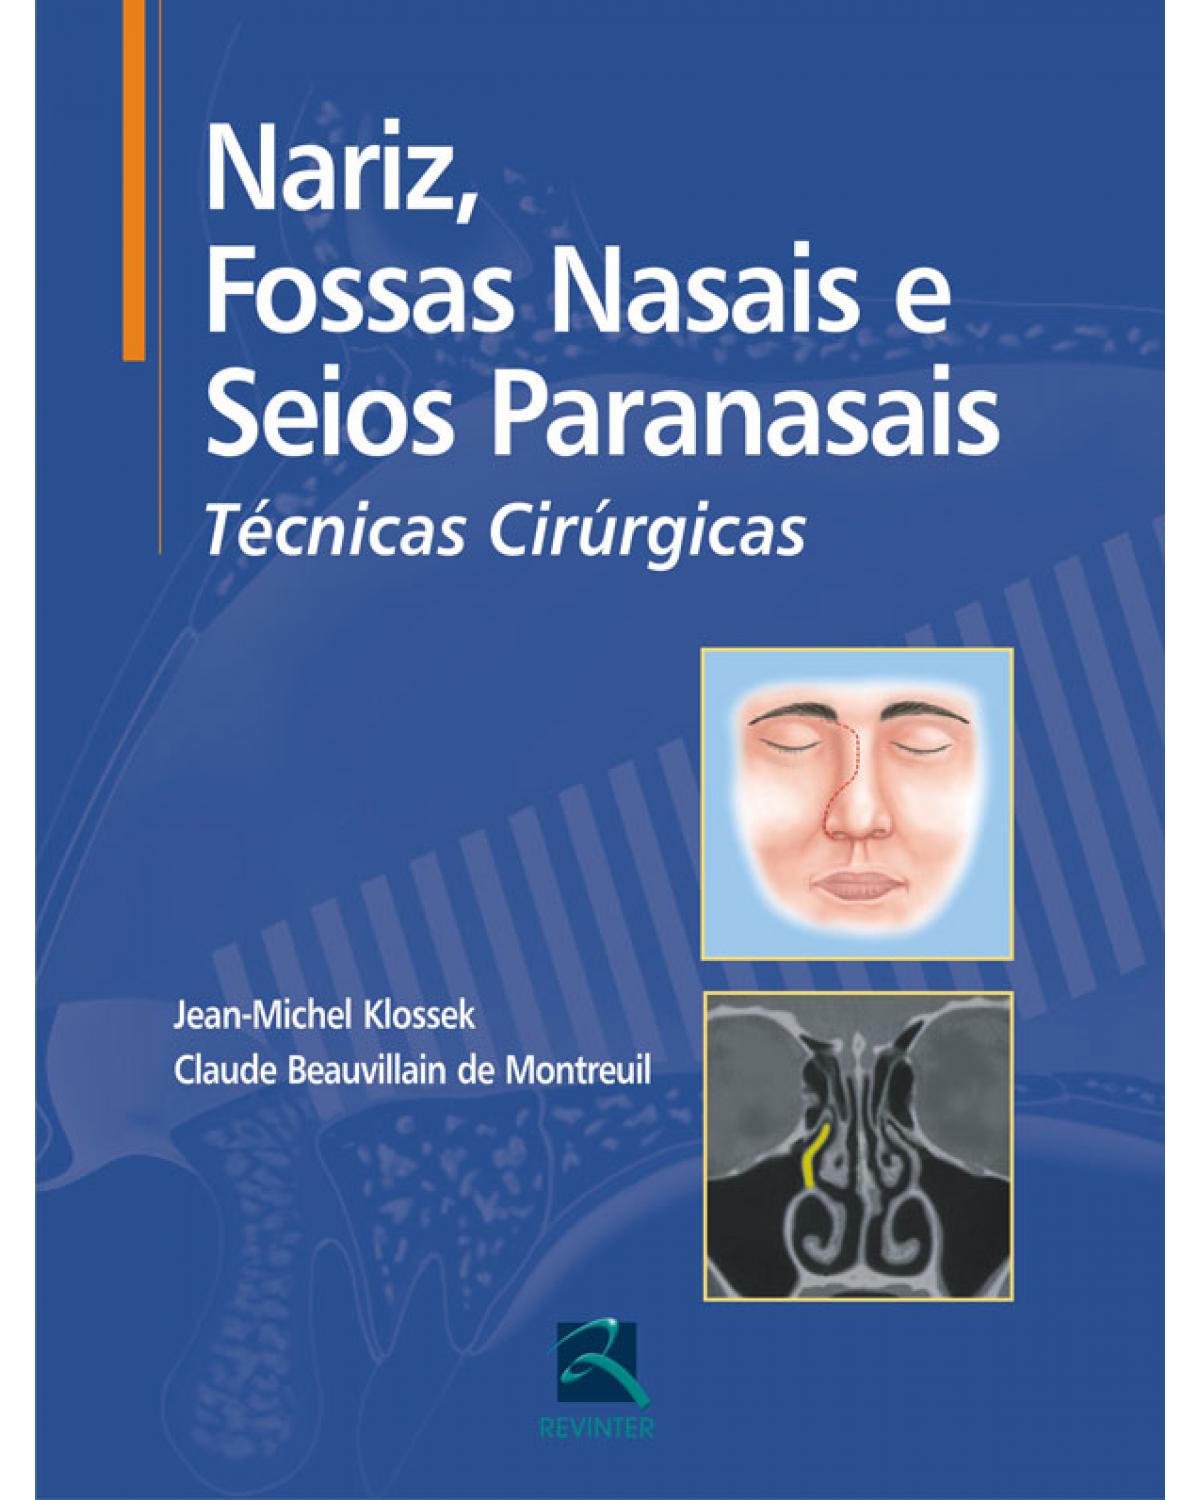 Nariz, fossas nasais e seios paranasais - técnicas cirúrgicas - 1ª Edição | 2009